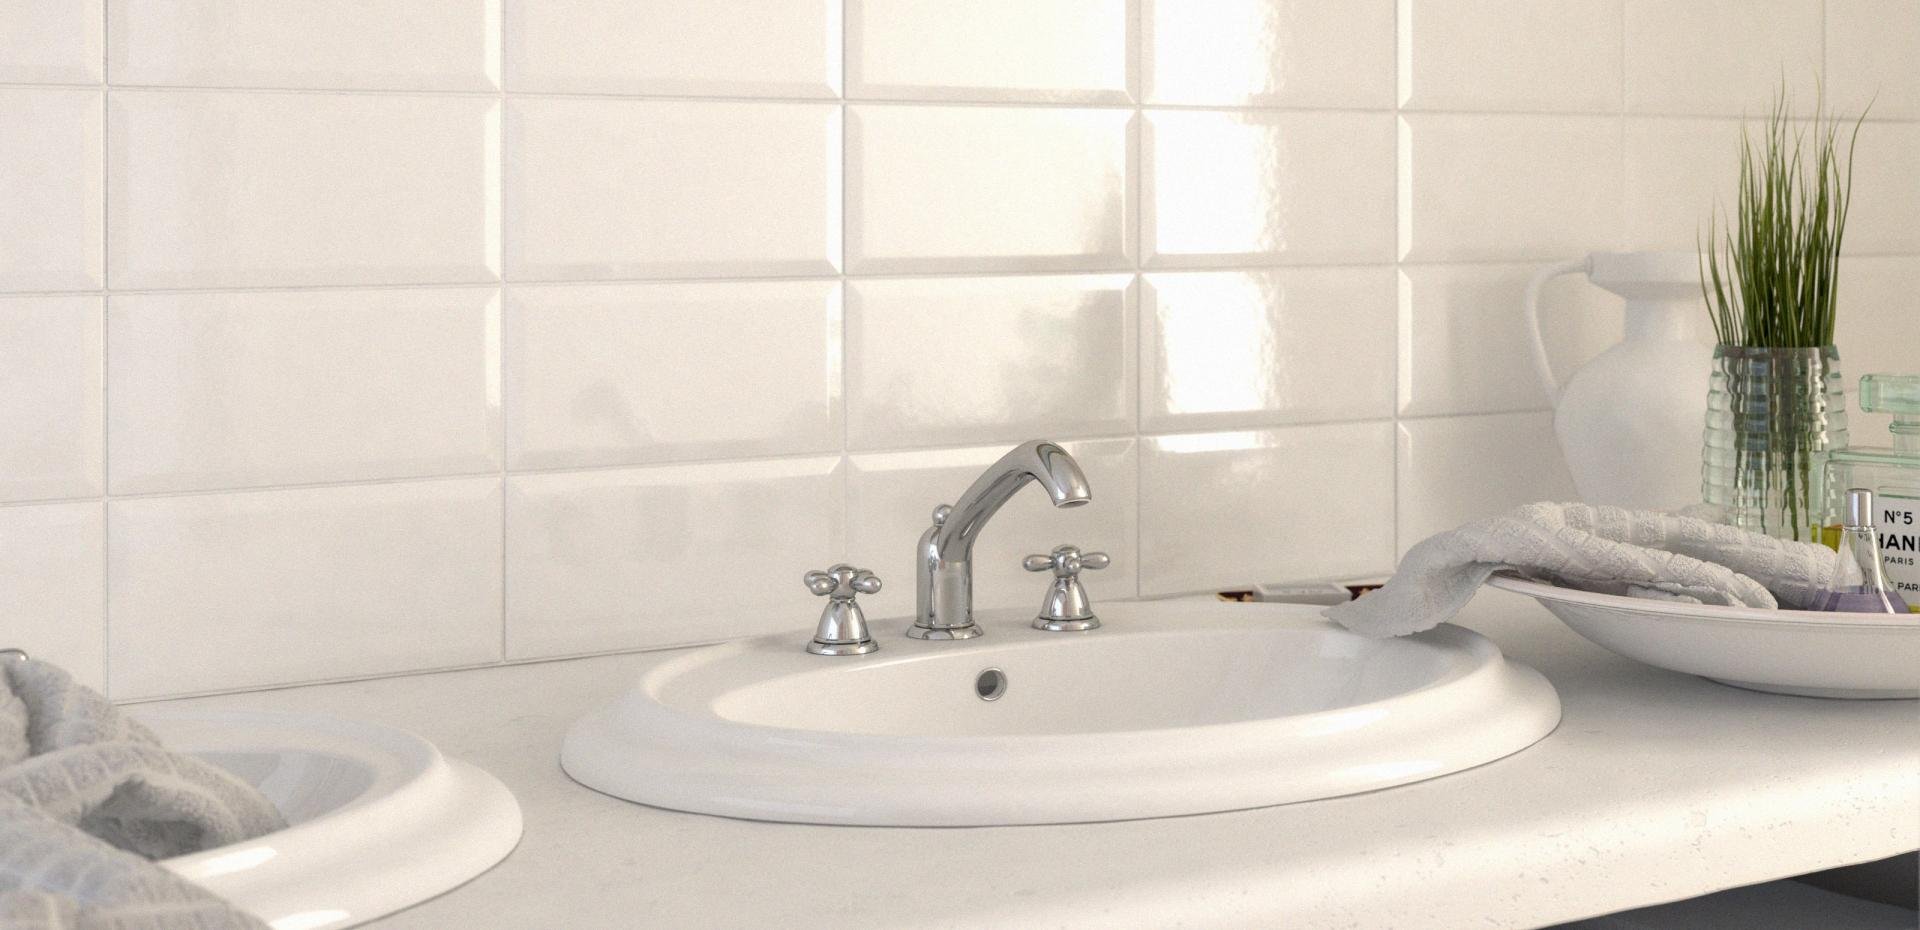 #Ceramica Vogue #Ghiaccio RAL 9003 #Obklady a dlažby #Koupelna #Metro #Minimalistický styl #Moderní styl #bílá #Lesklá dlažba #Malý formát #1000 - 1500 Kč/m2 #new 